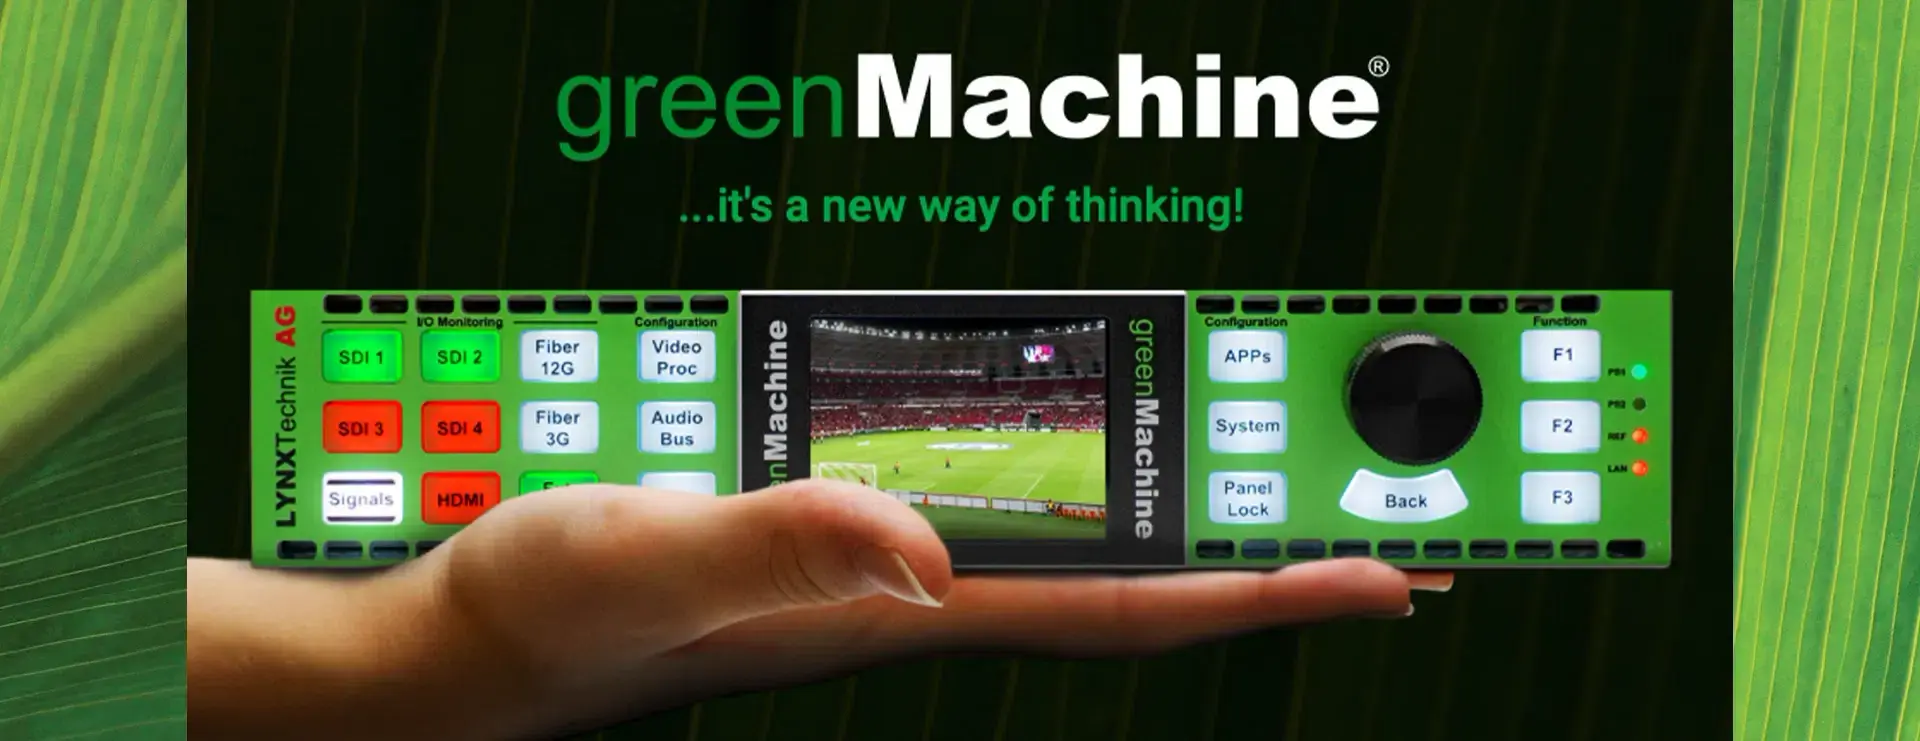 green machine banner